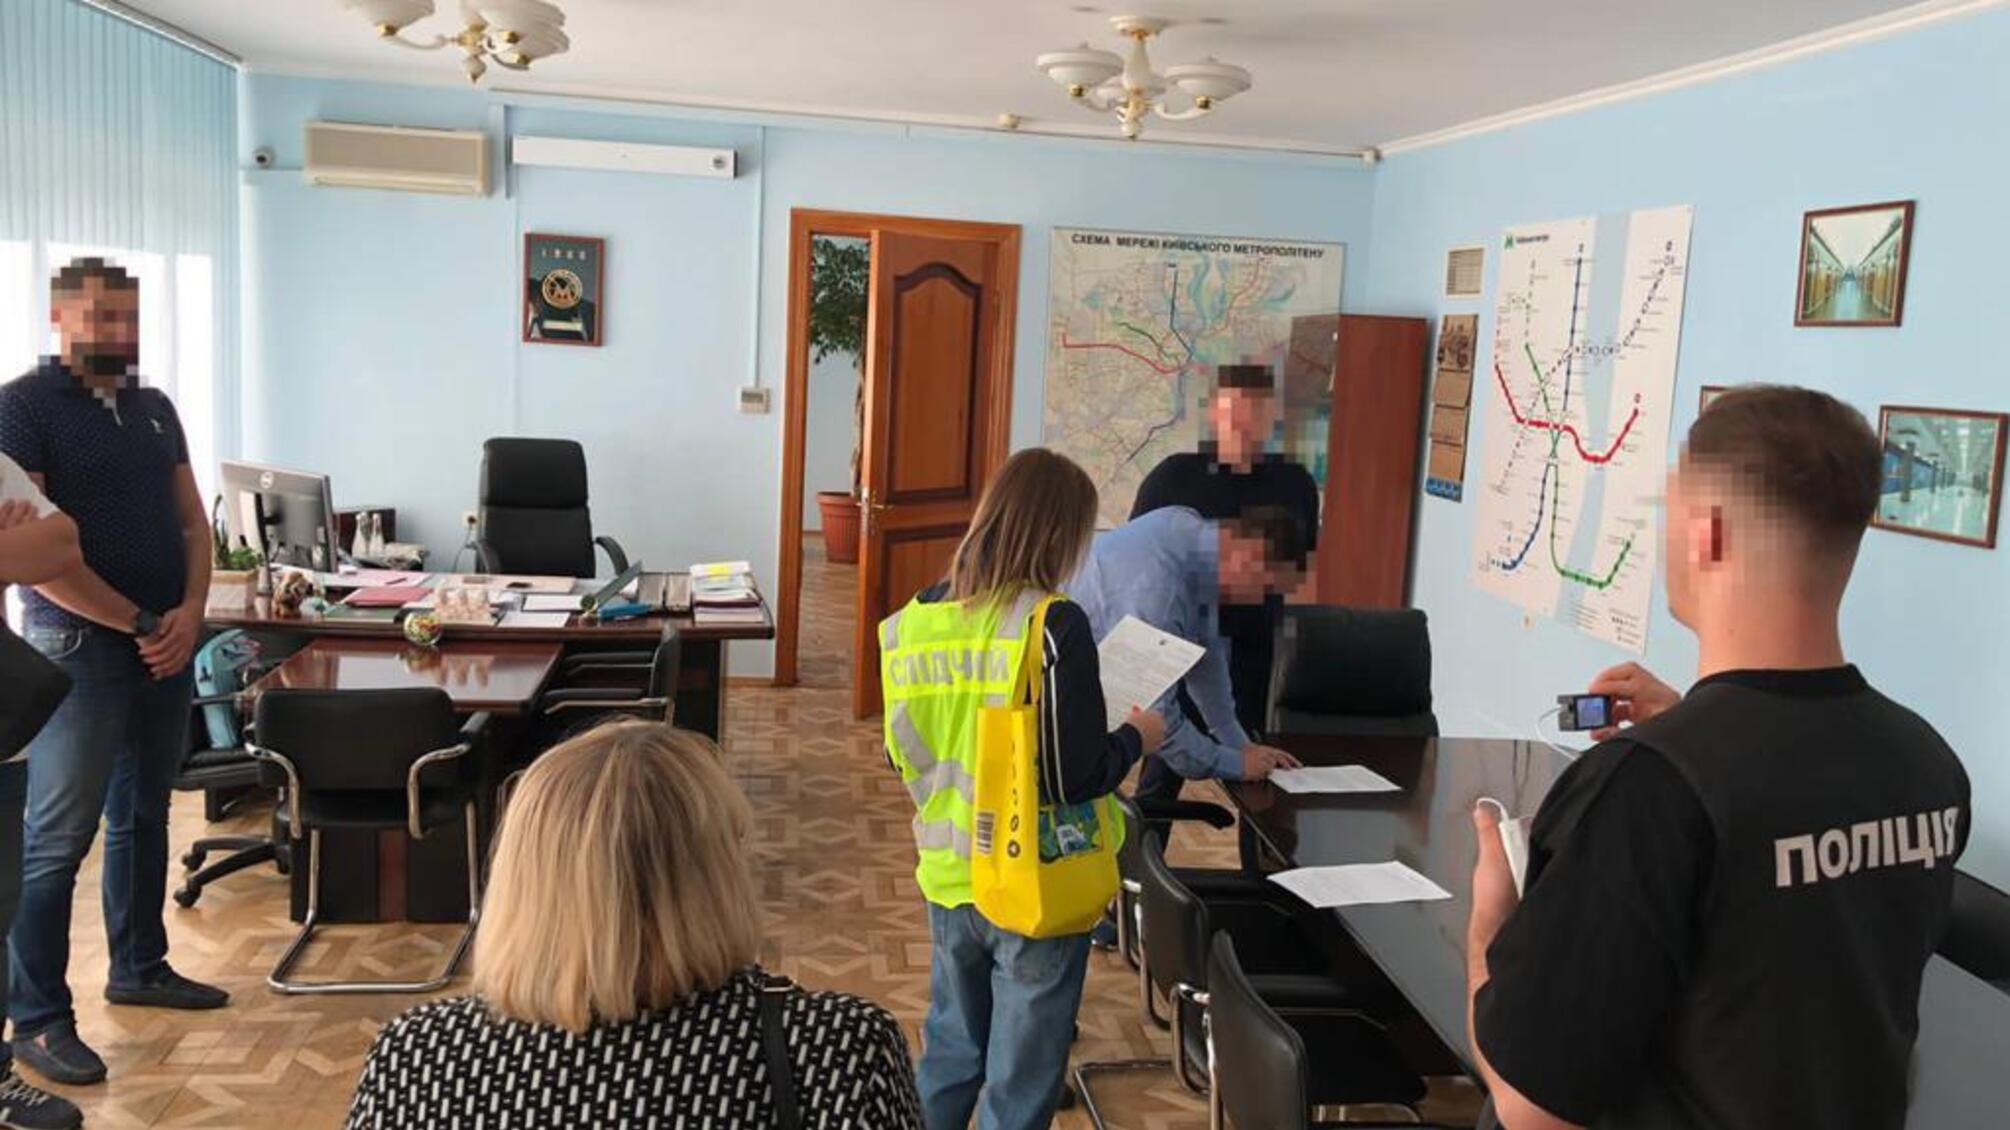 Розтрата коштів на будівництві метро: правоохоронці провели обшуки в офісах Київметробуду